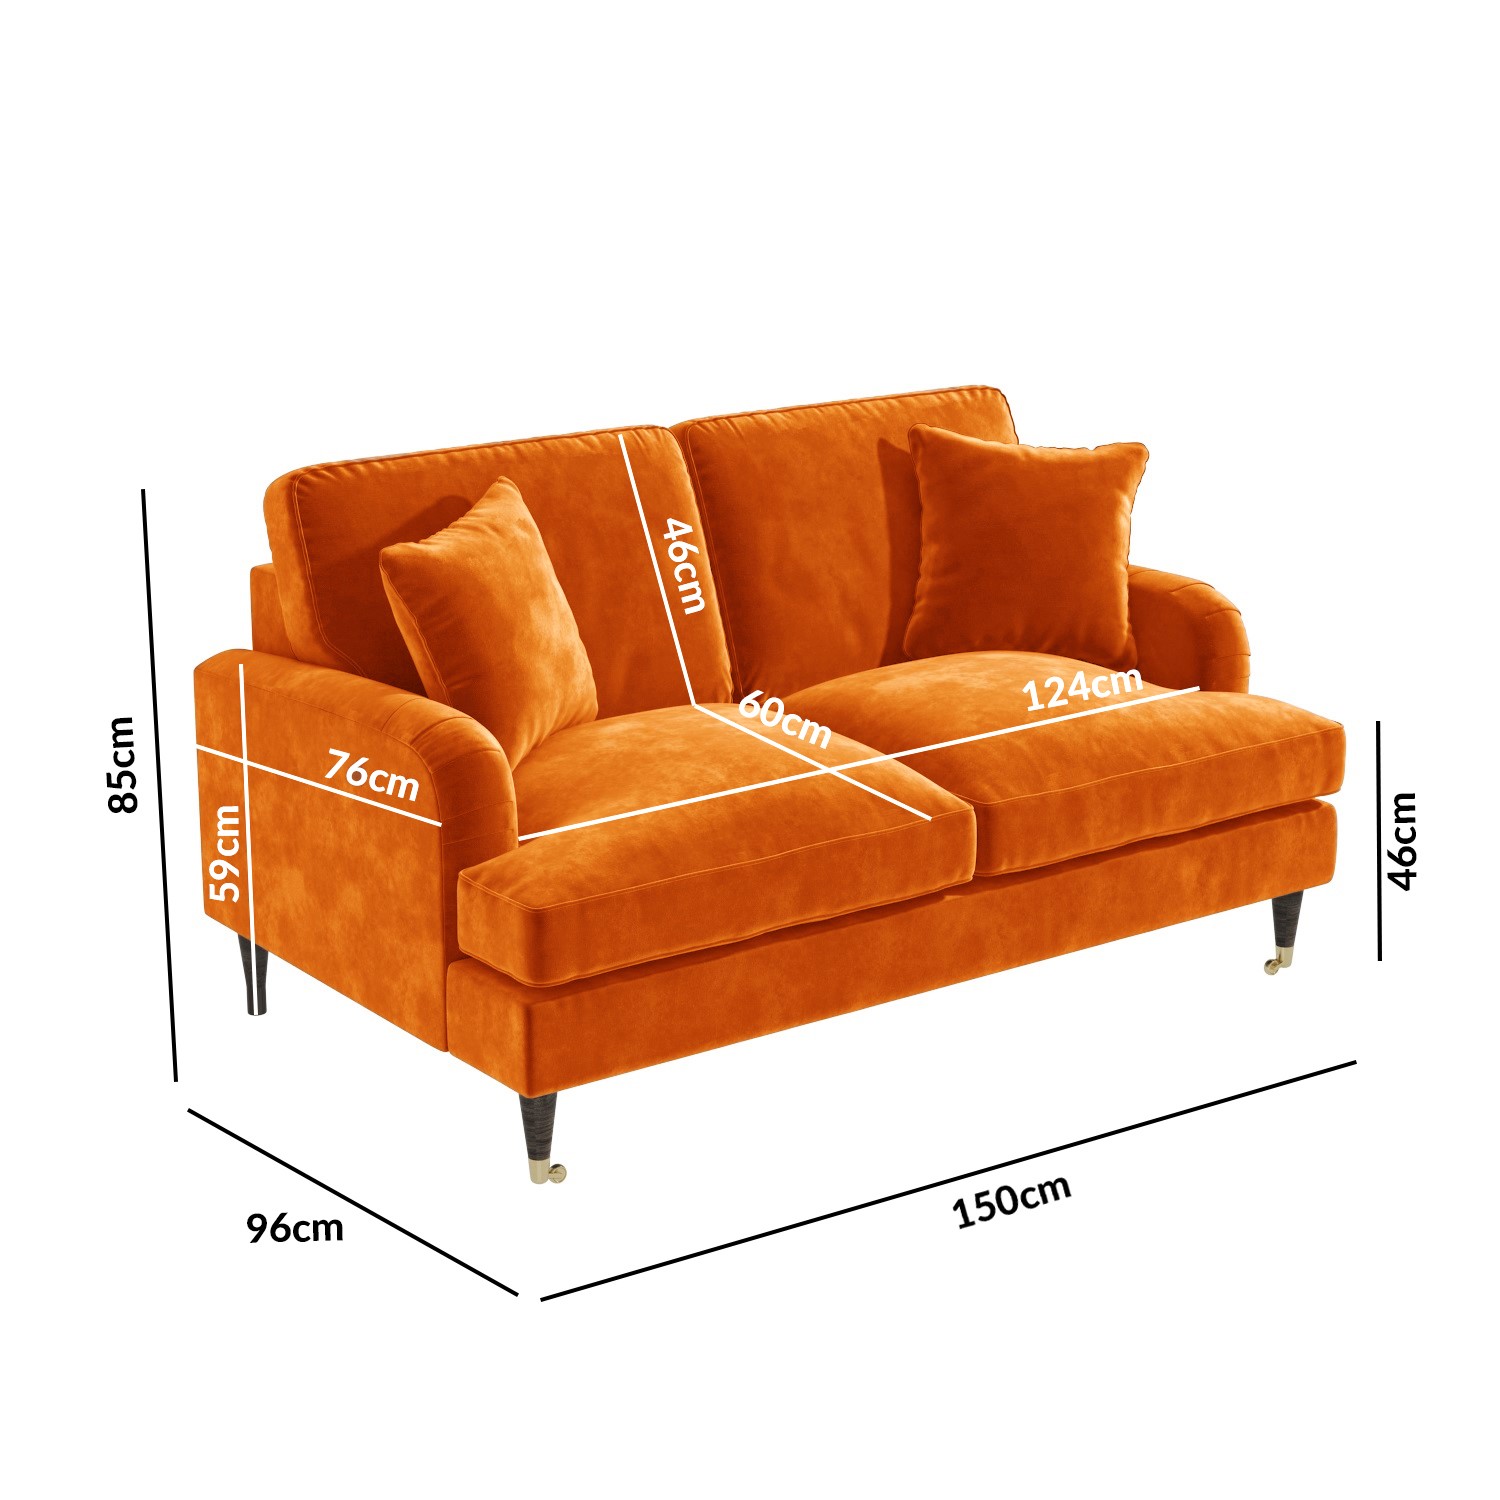 Read more about Orange velvet 2 seater sofa payton